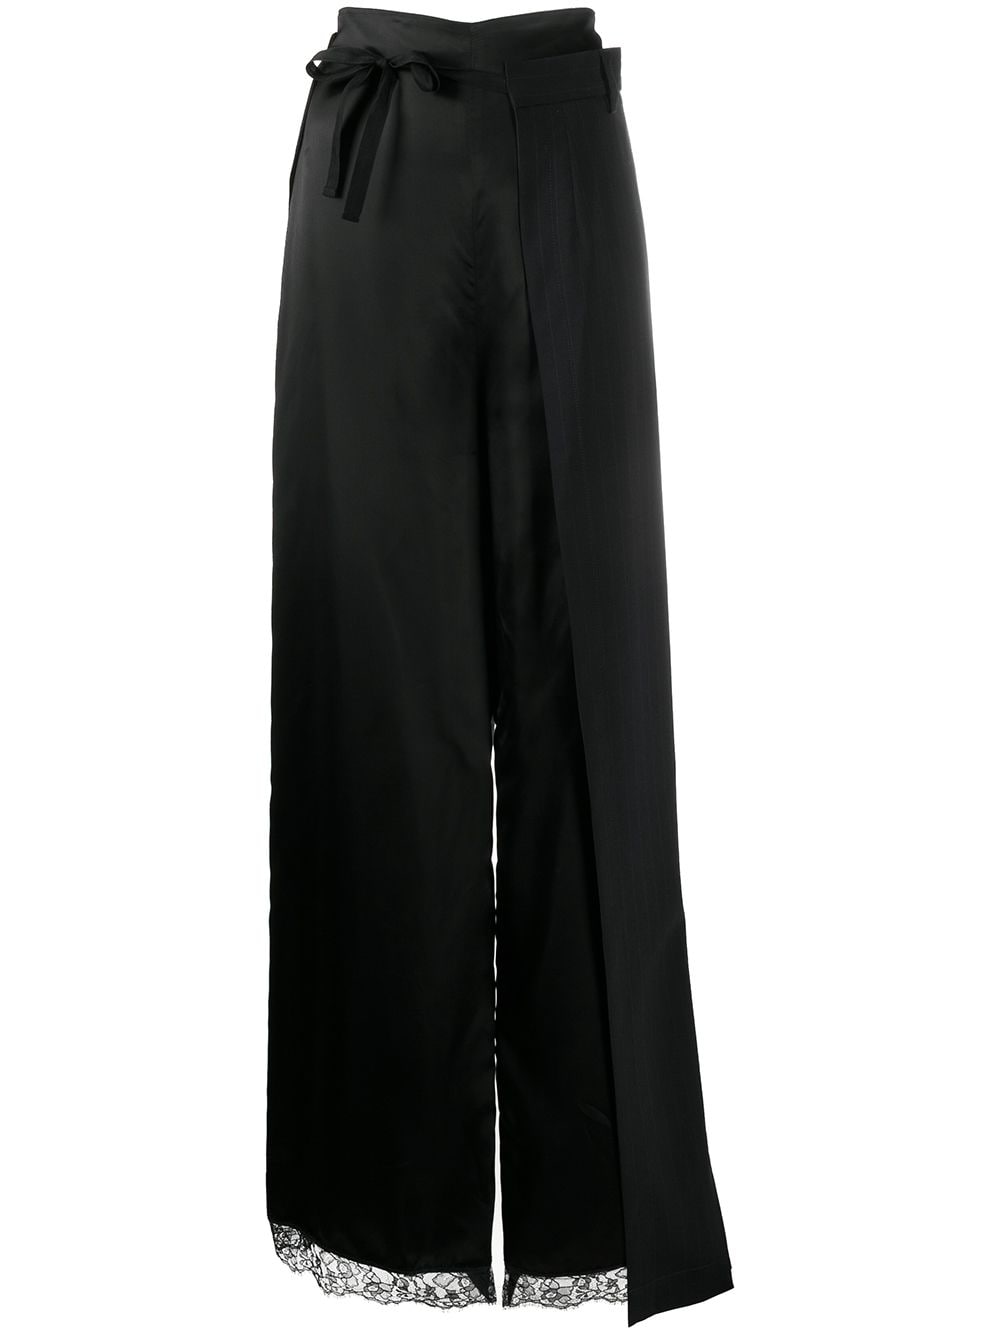 фото Mm6 Maison Margiela длинная многослойная юбка с кружевом